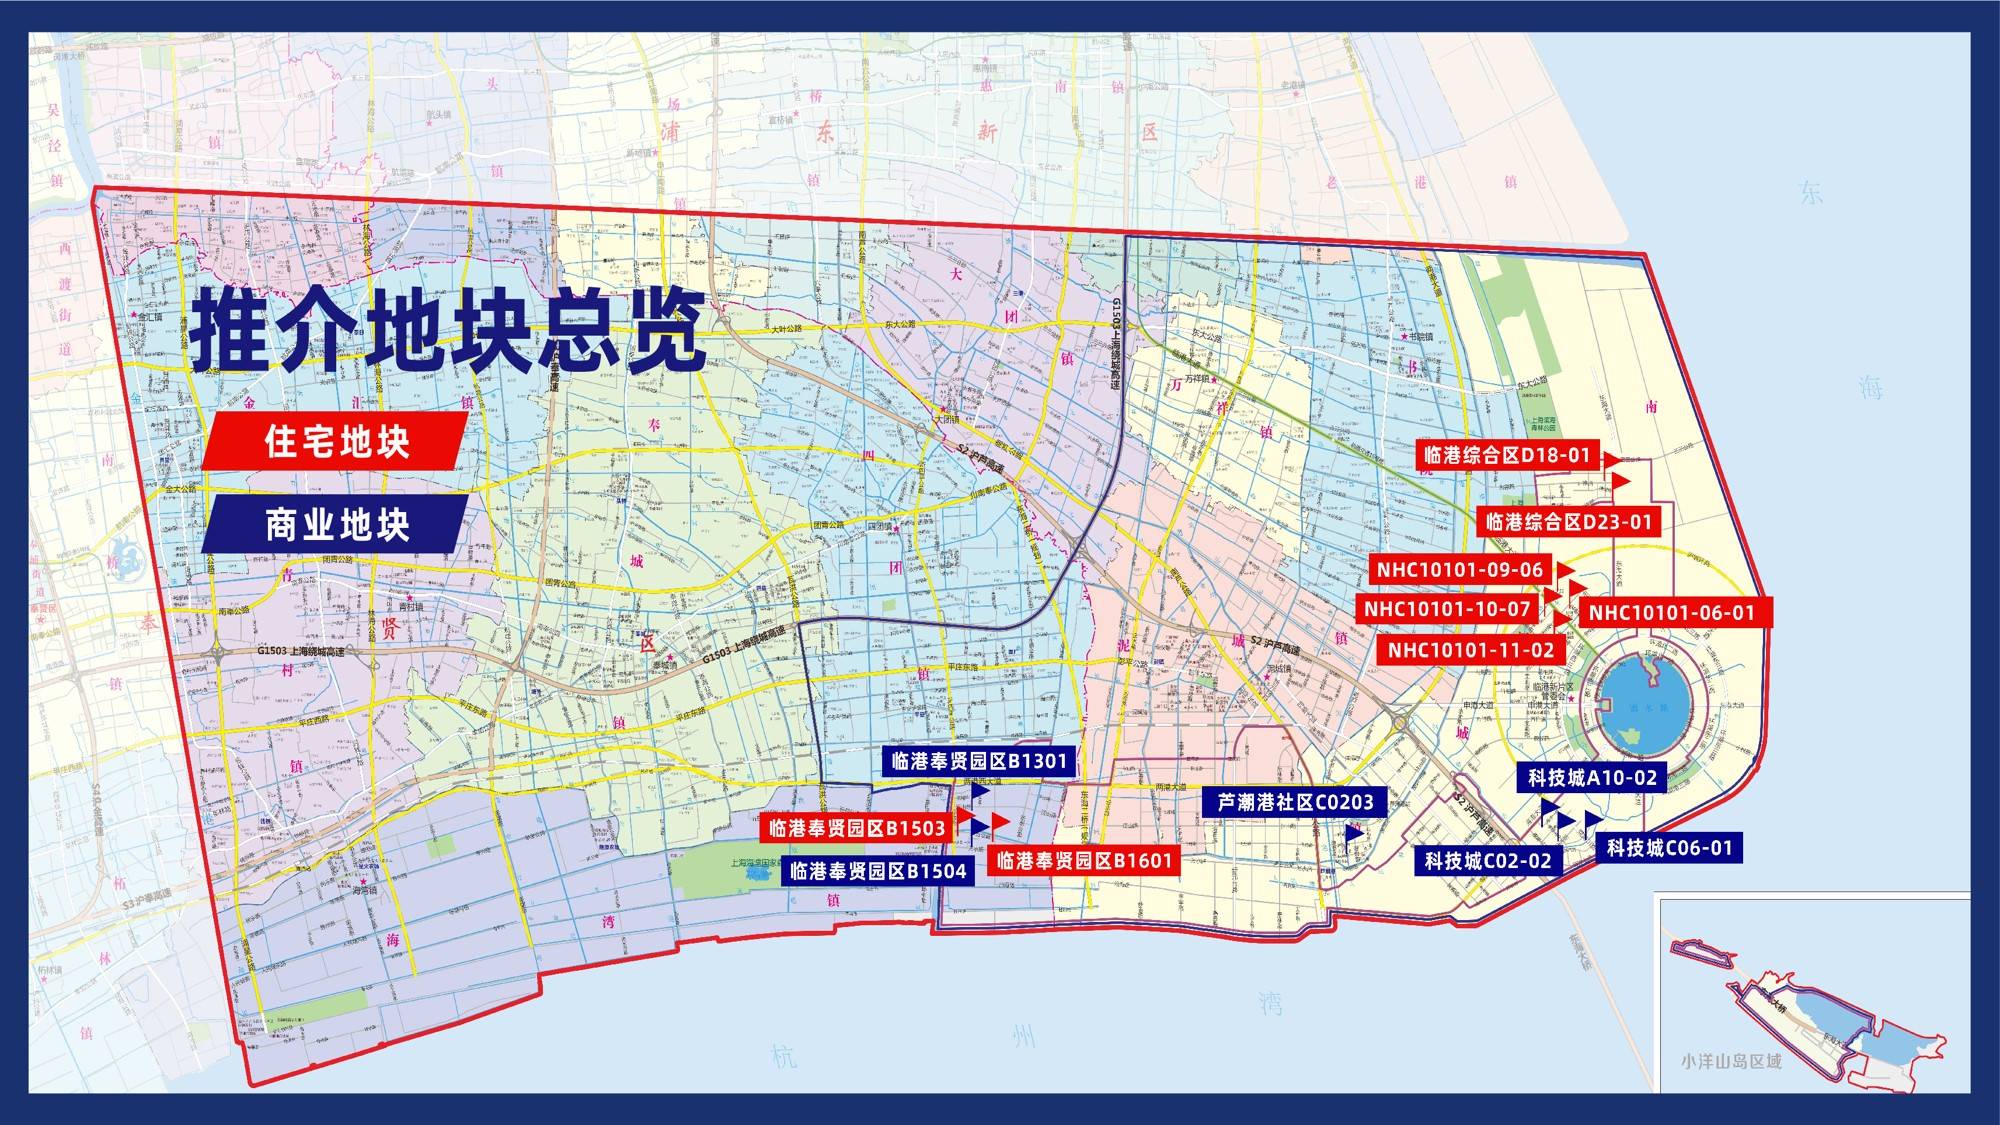 上海土地上新了④丨临港新建住宅力争300万平方米